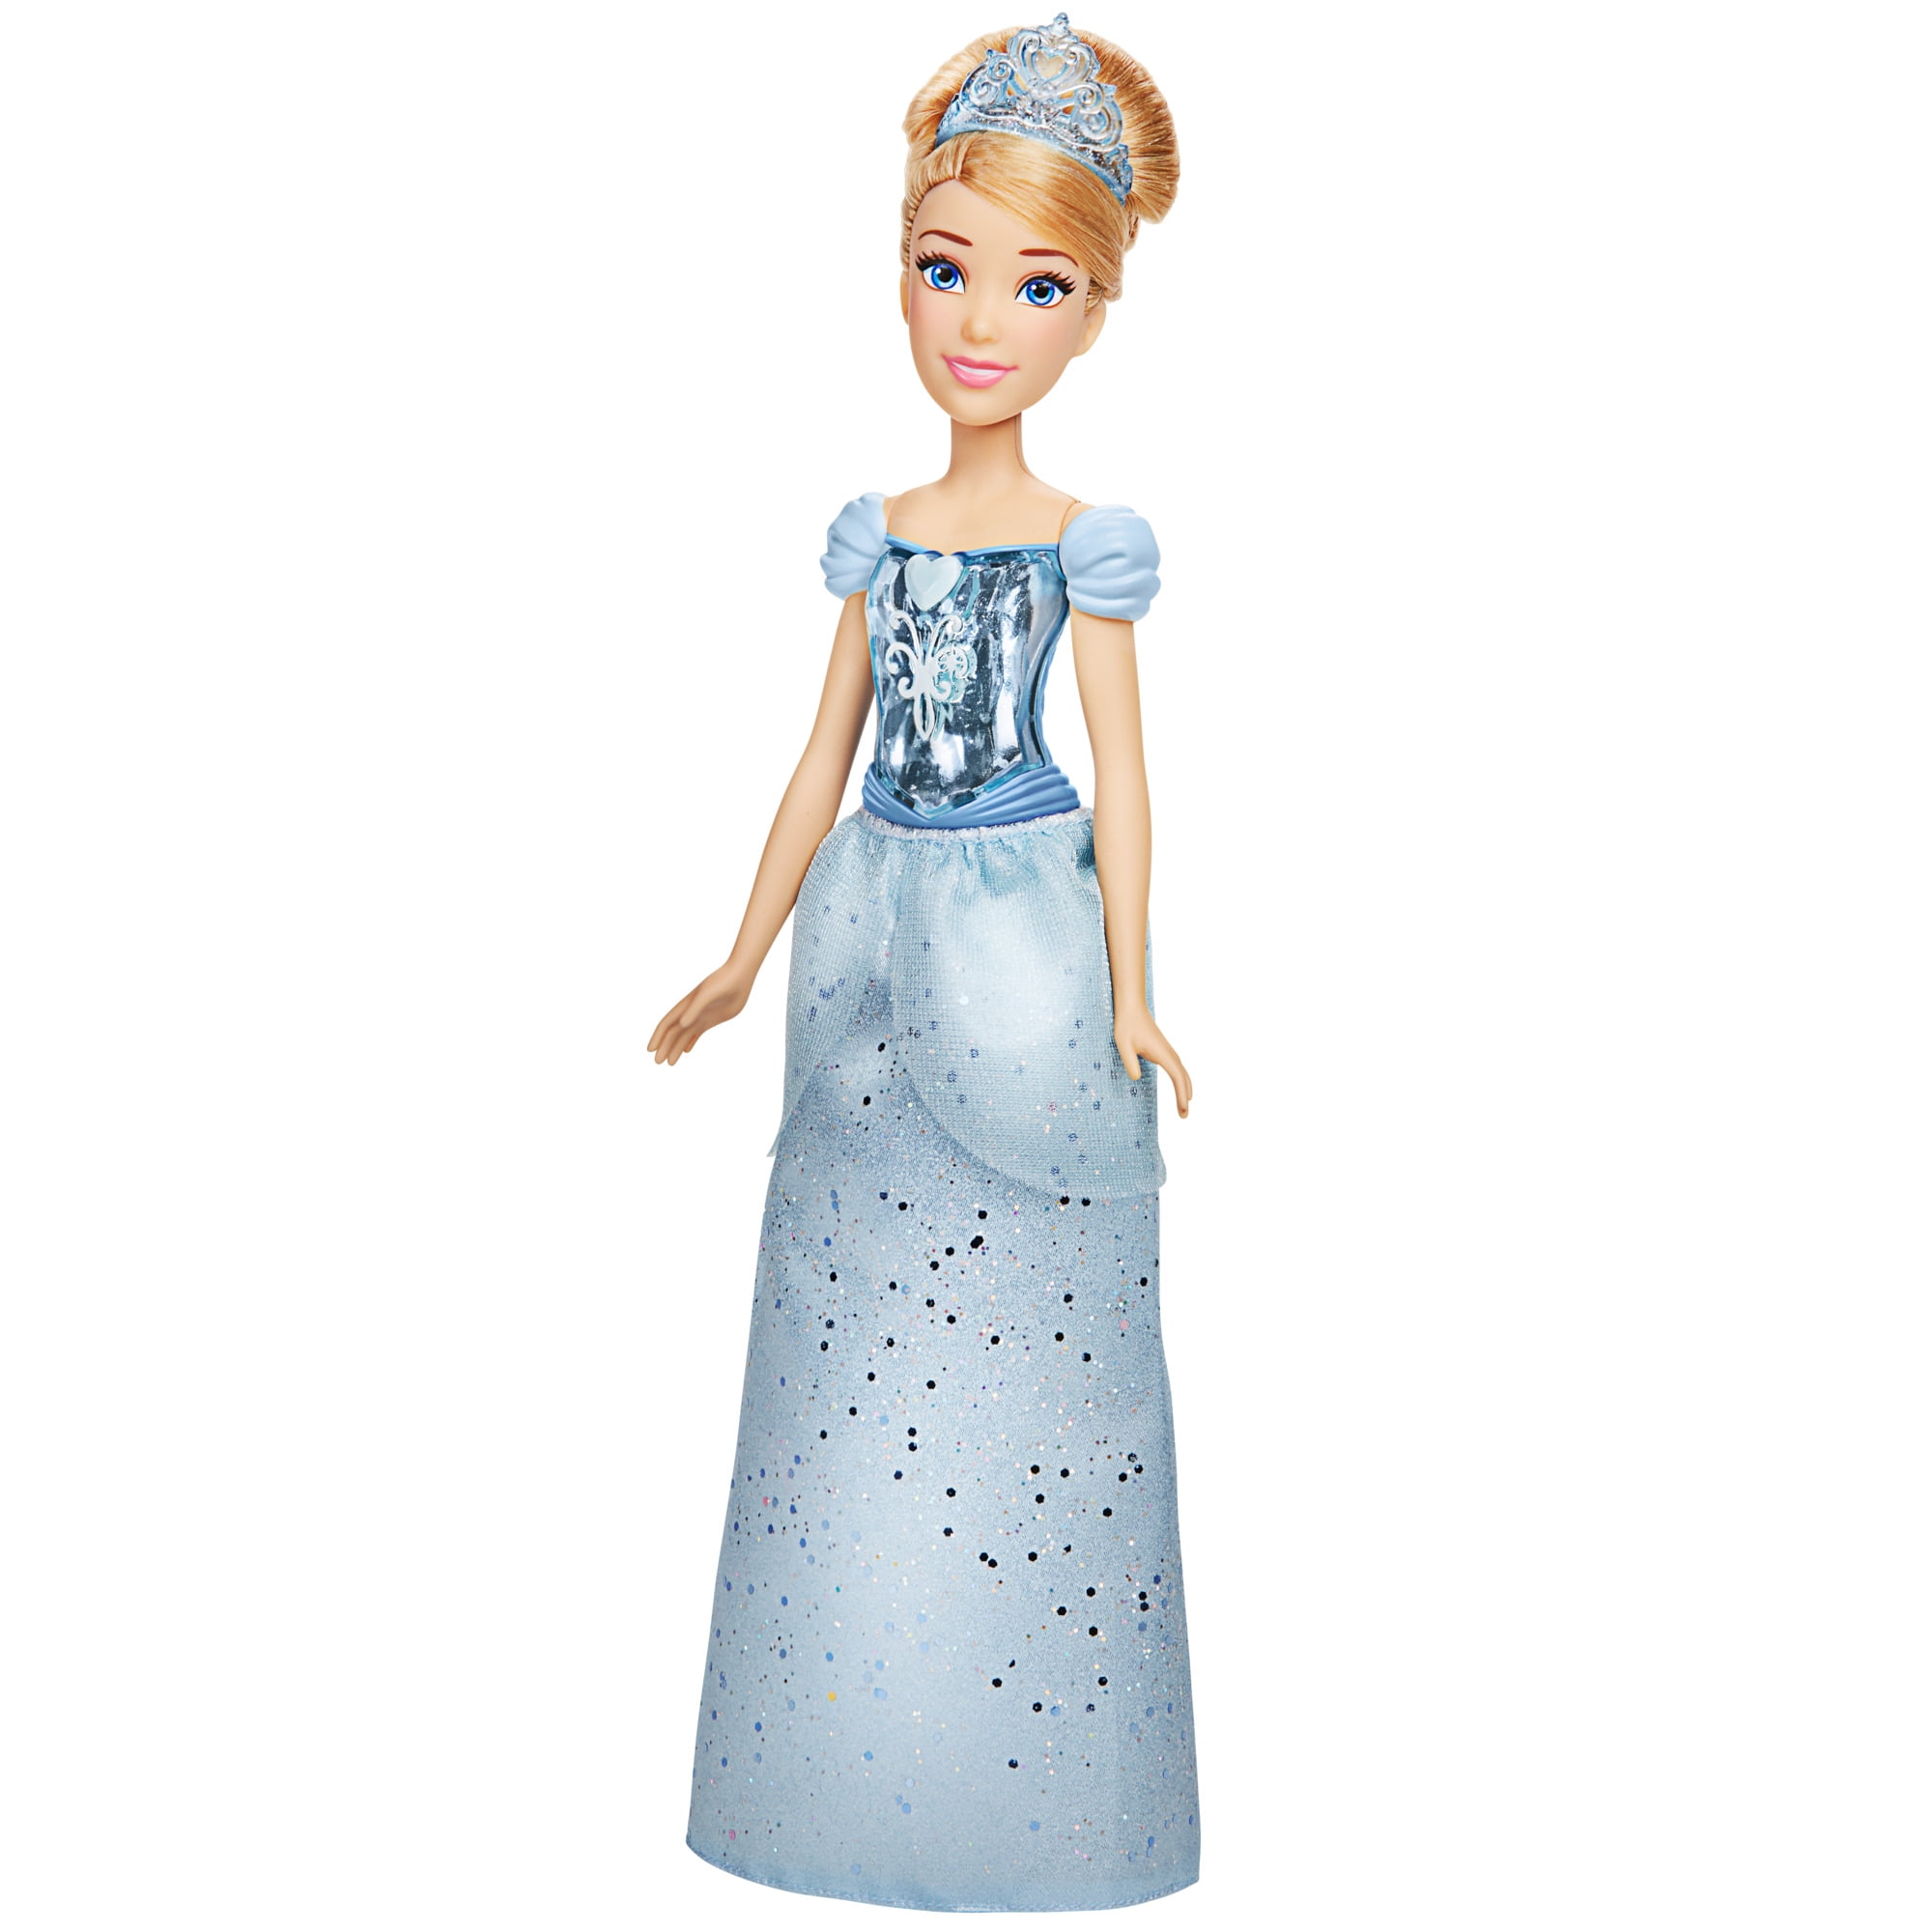 New Disney Princess Figure Series 4 Tiara Collection Cinderella Pink Dress